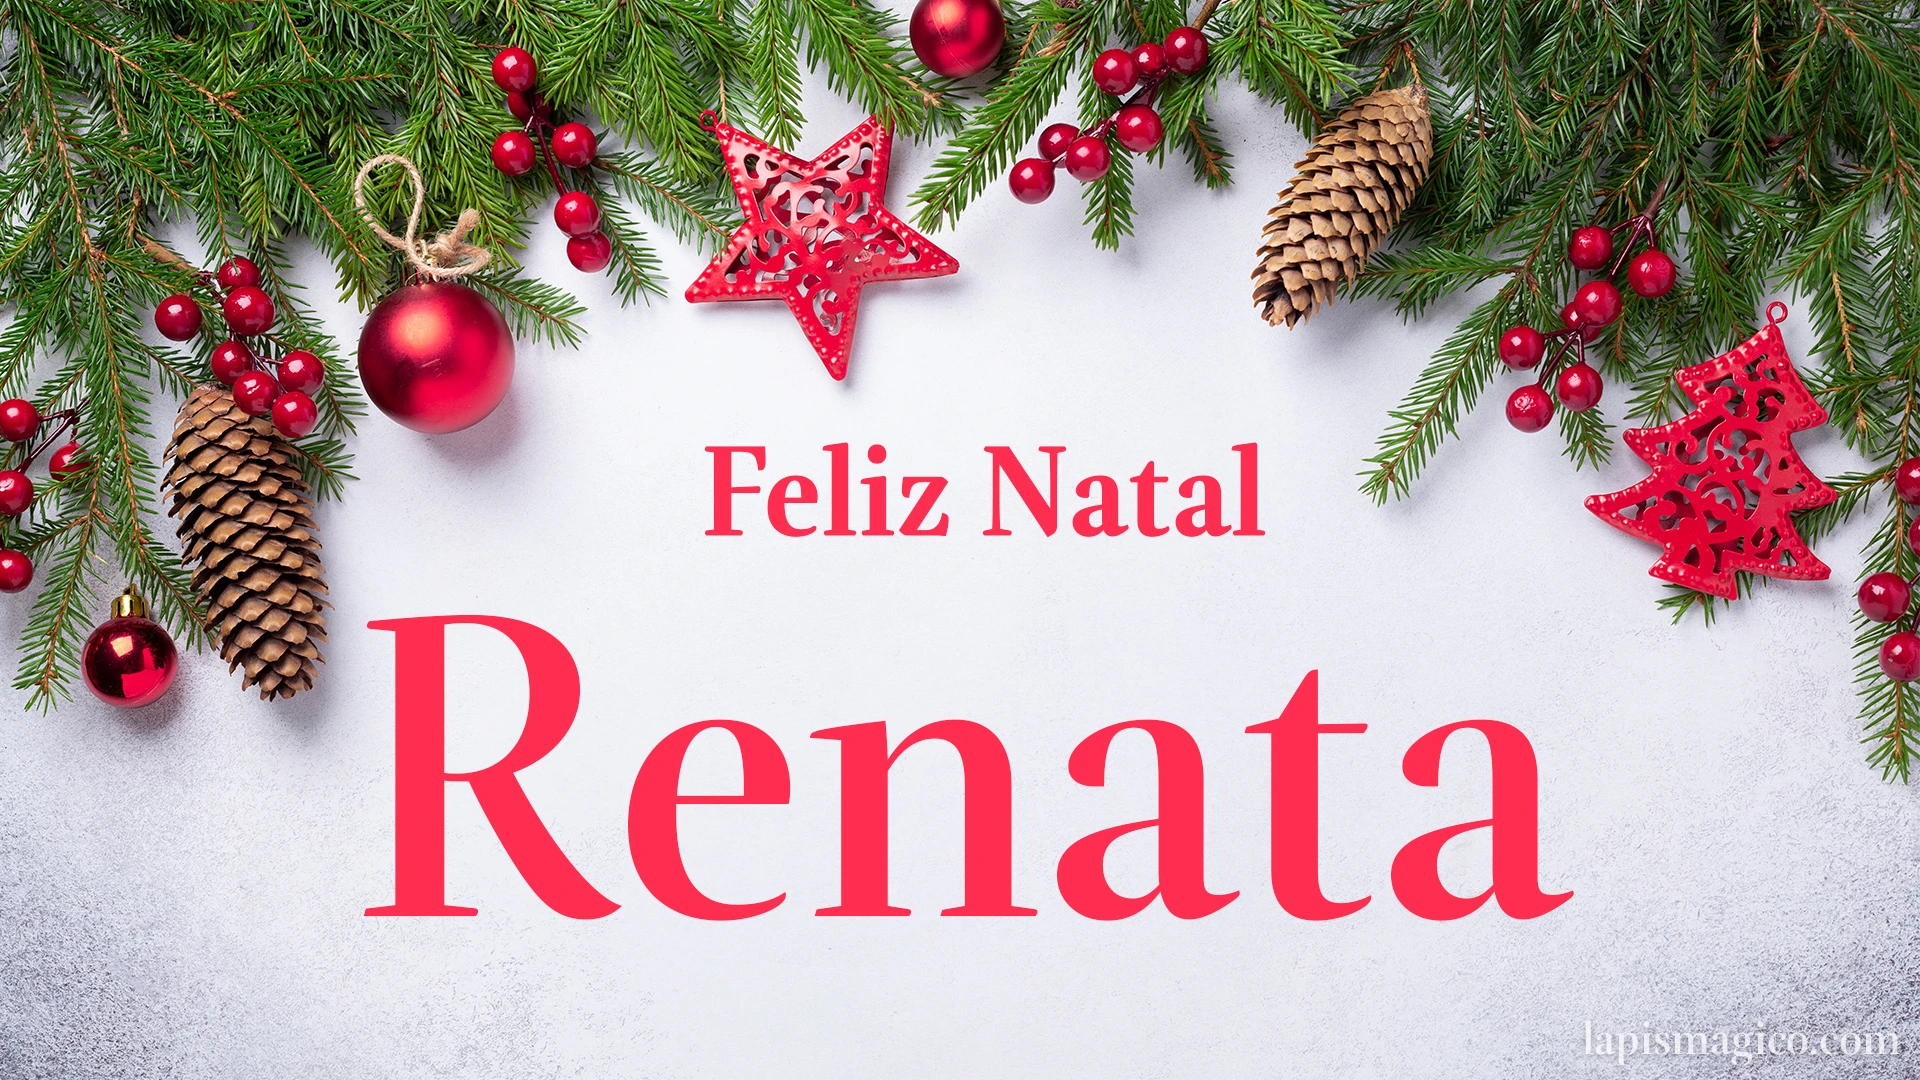 Oh Renata, cinco postais de Feliz Natal Postal com o teu nome